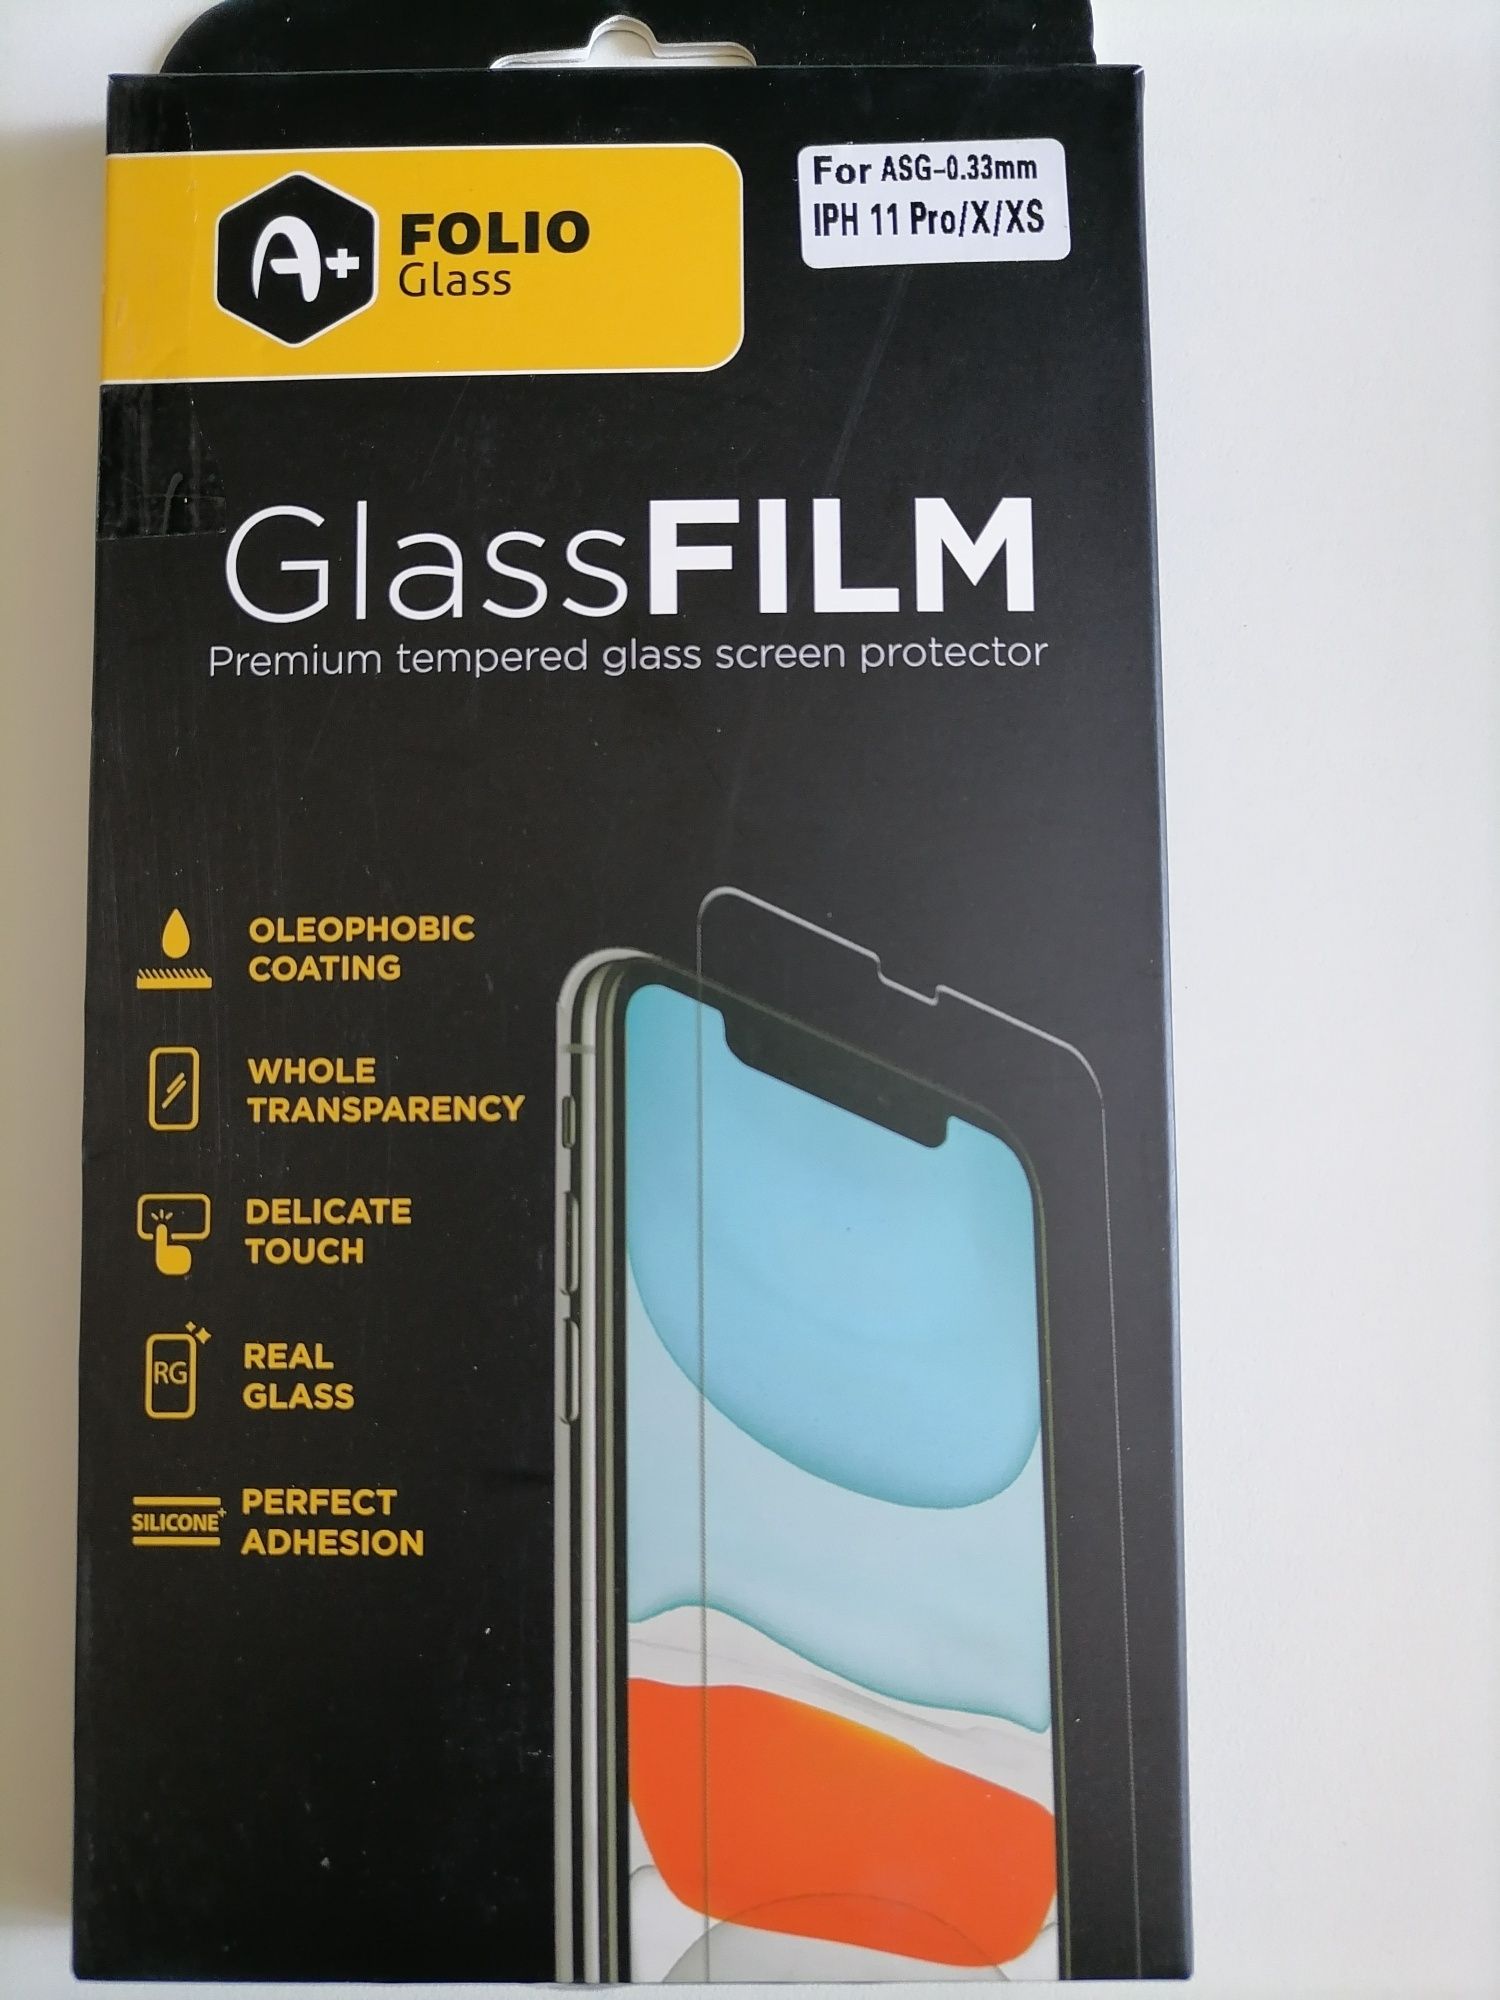 Vând folie sticla pentru Iphone 11 Pro, X, xs,nou calitate la cutie.